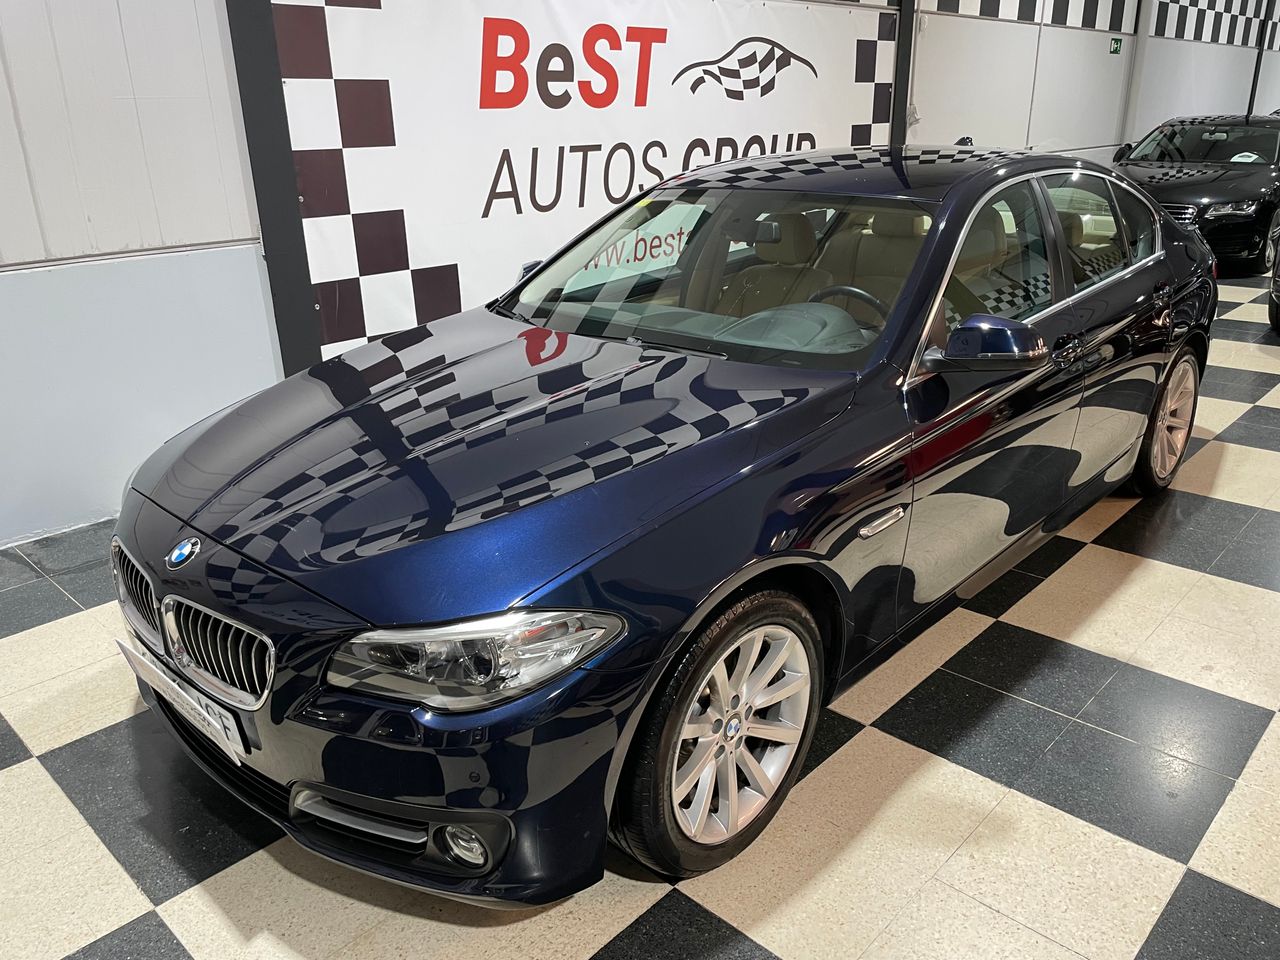 BMW Serie 5 ocasión segunda mano 2015 Diésel por 22.990€ en Málaga